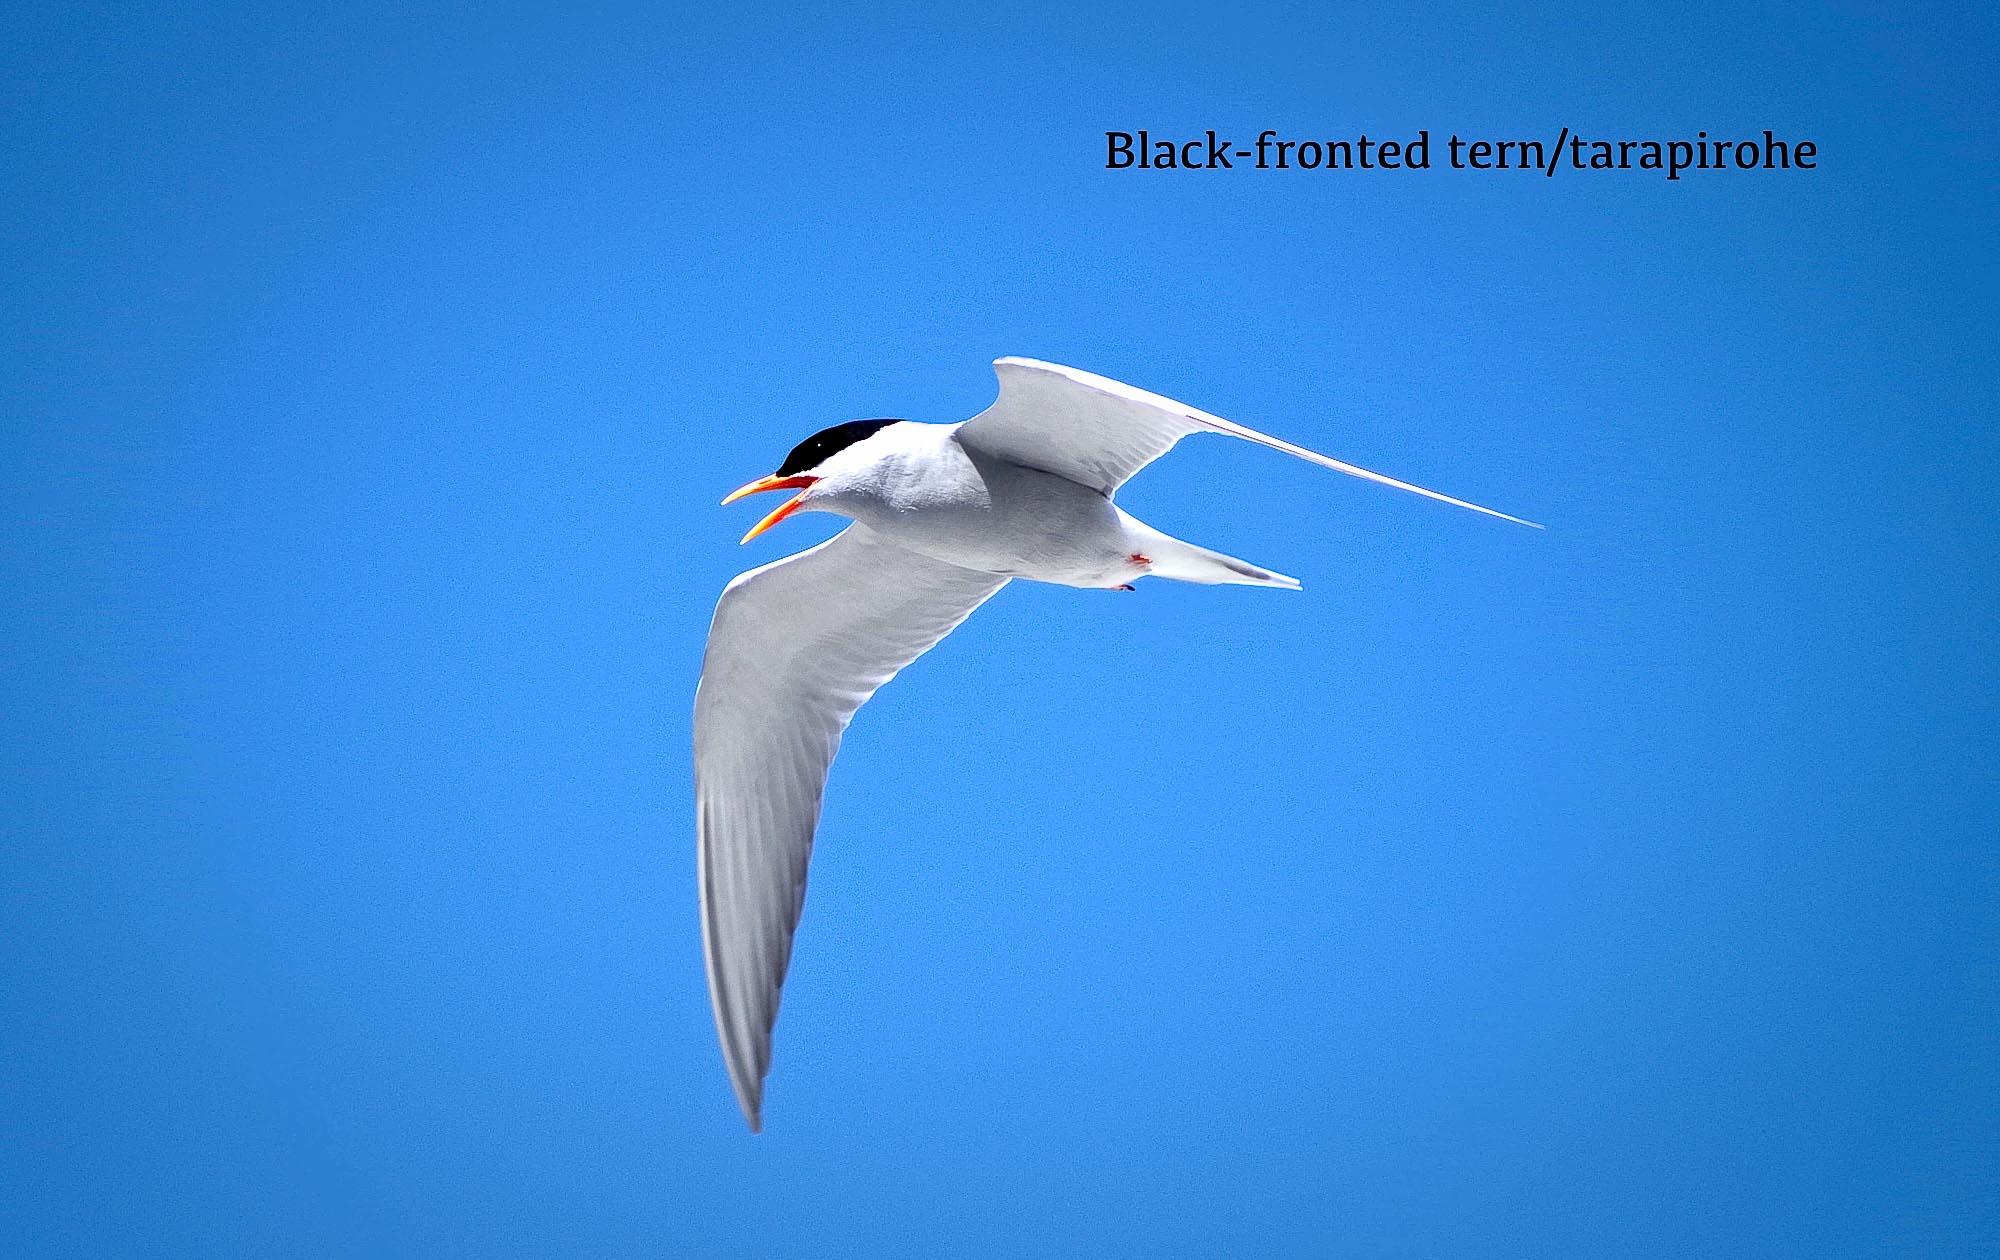 Black-fronted tern / tarapirohe